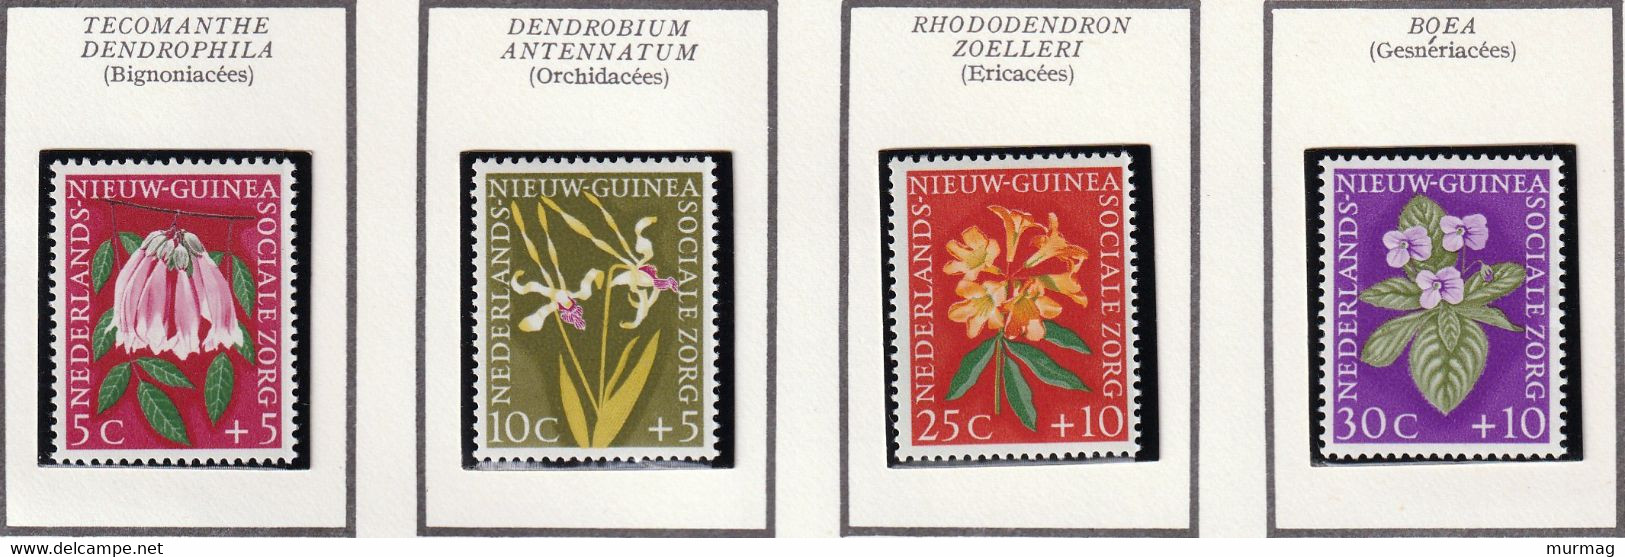 NOUVELLE GUINEE NEERLANDAISE - Fleurs, Orchidées, Ericacées - N° 52-55 6 1959 - MNH - Nueva Guinea Holandesa